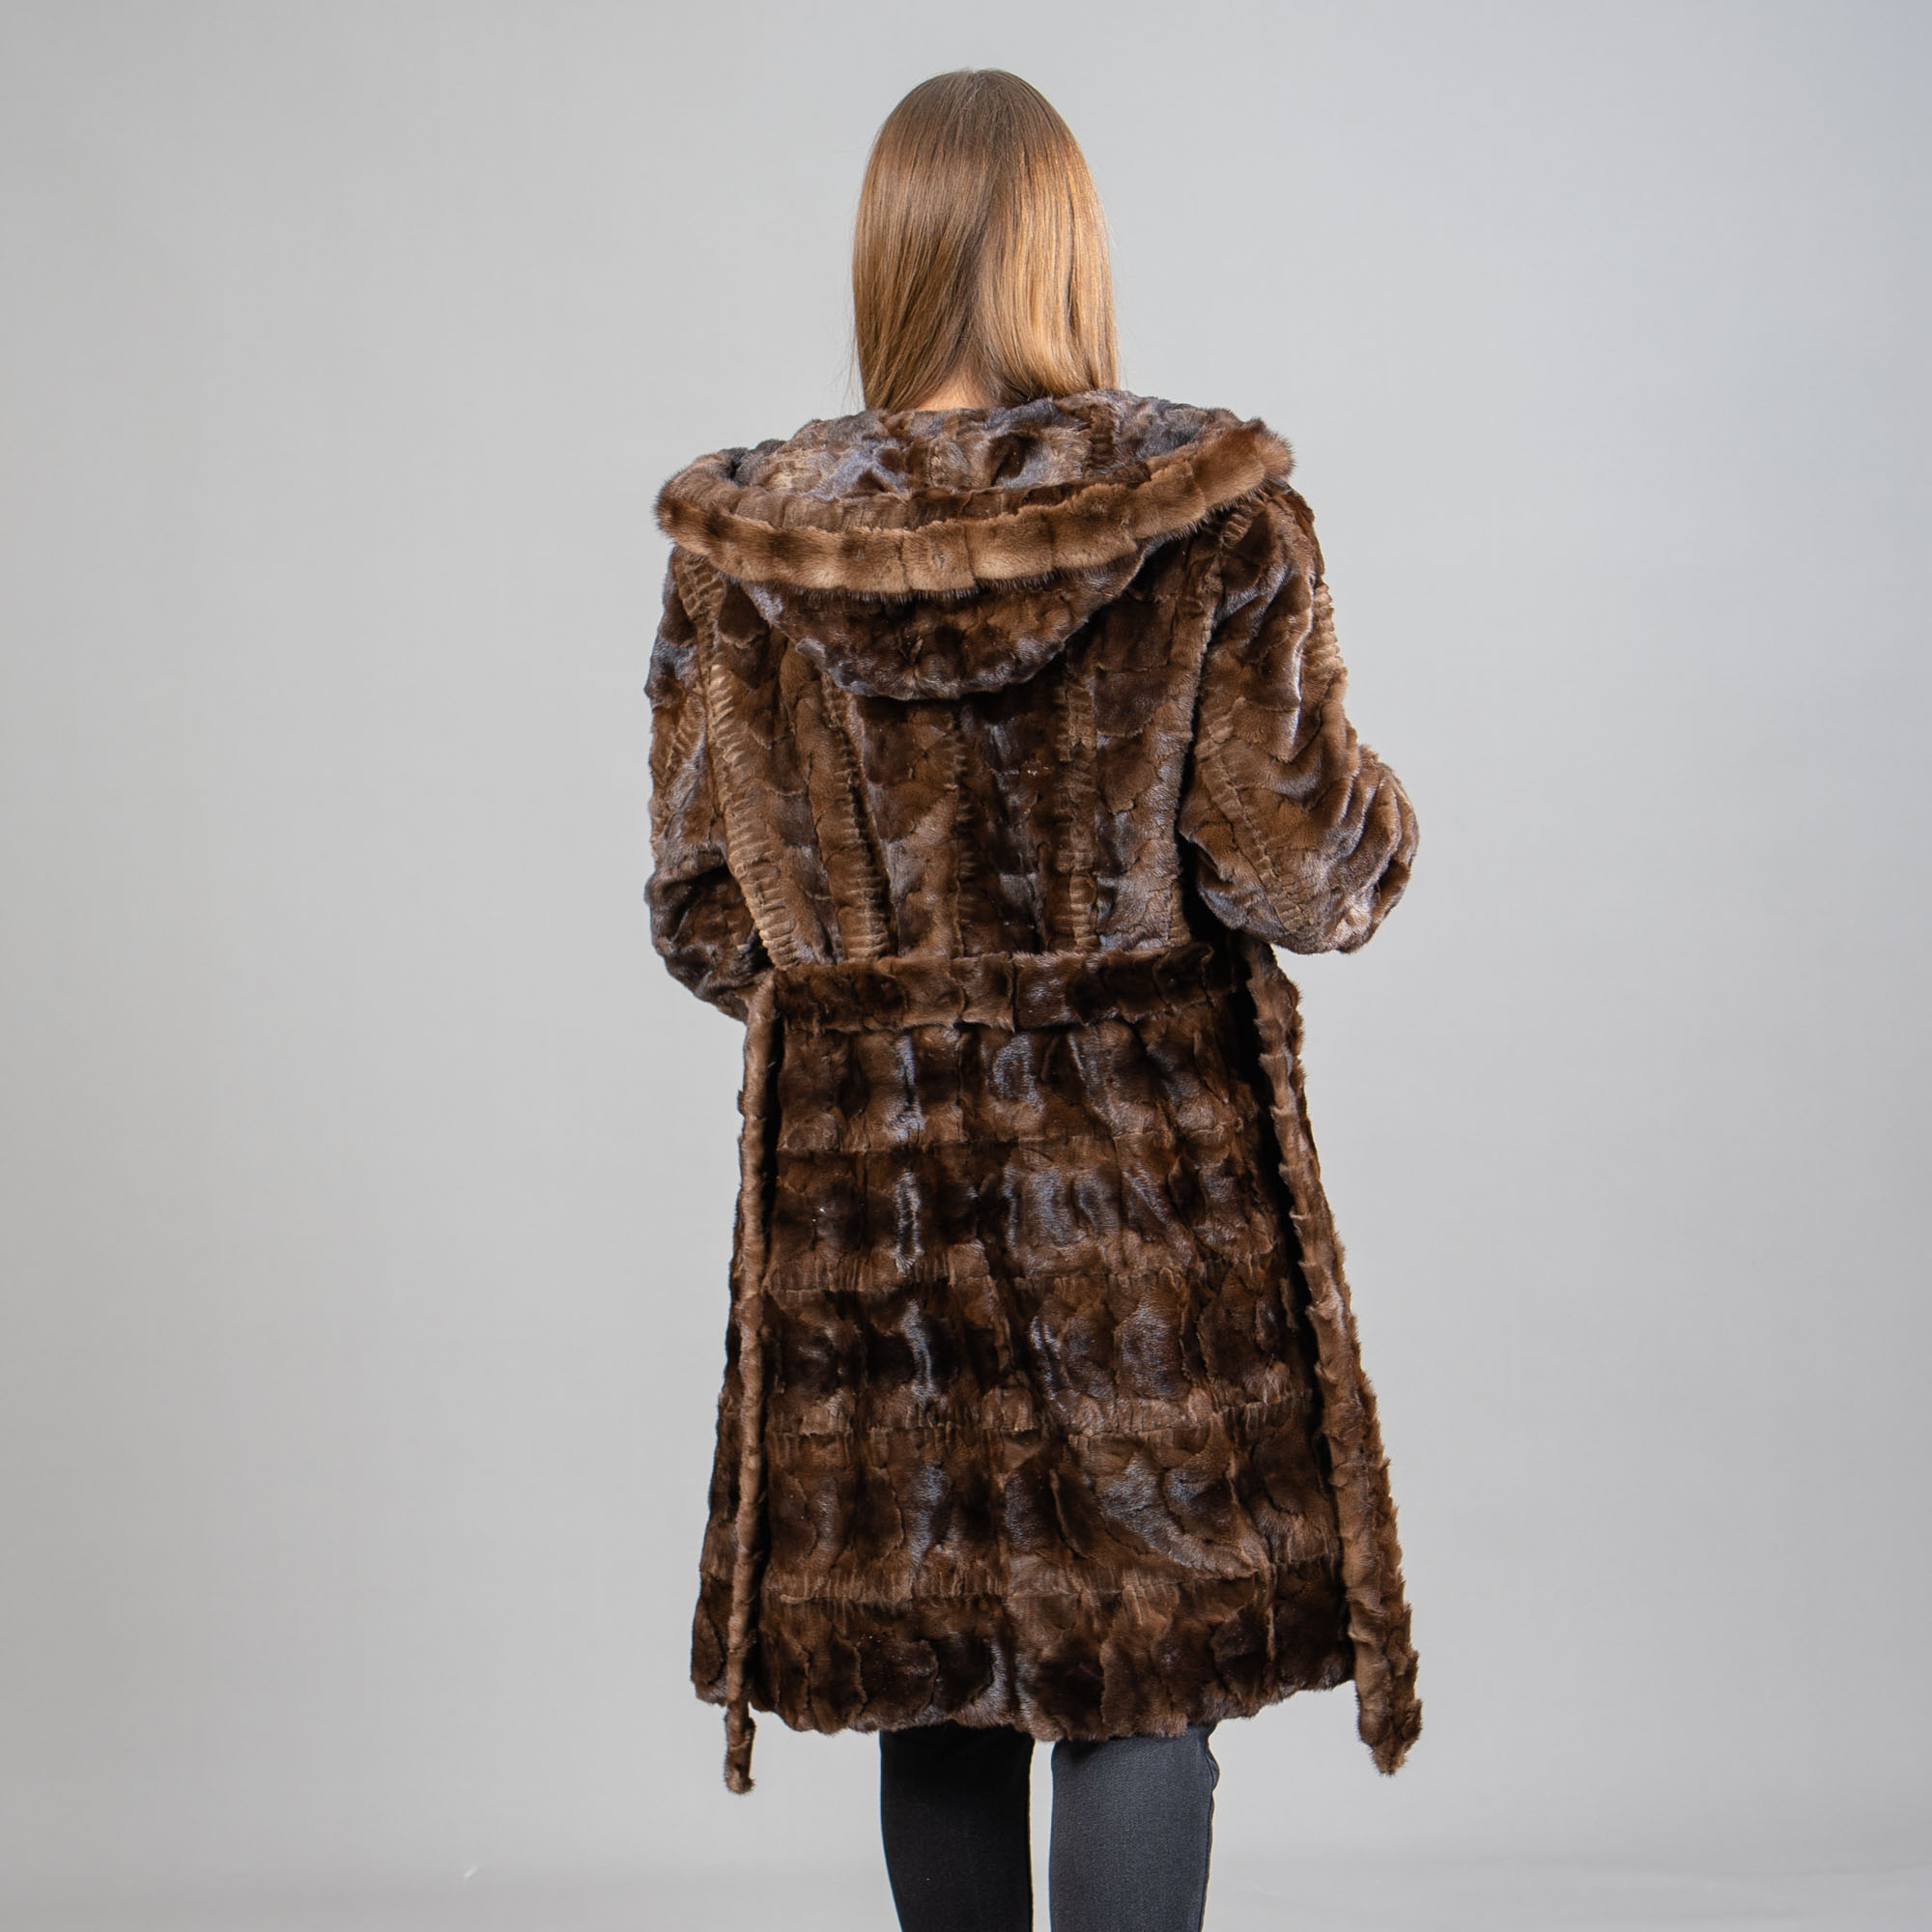 καφέ γούνινο παλτό βιζόν με κουκούλα και ζώνη